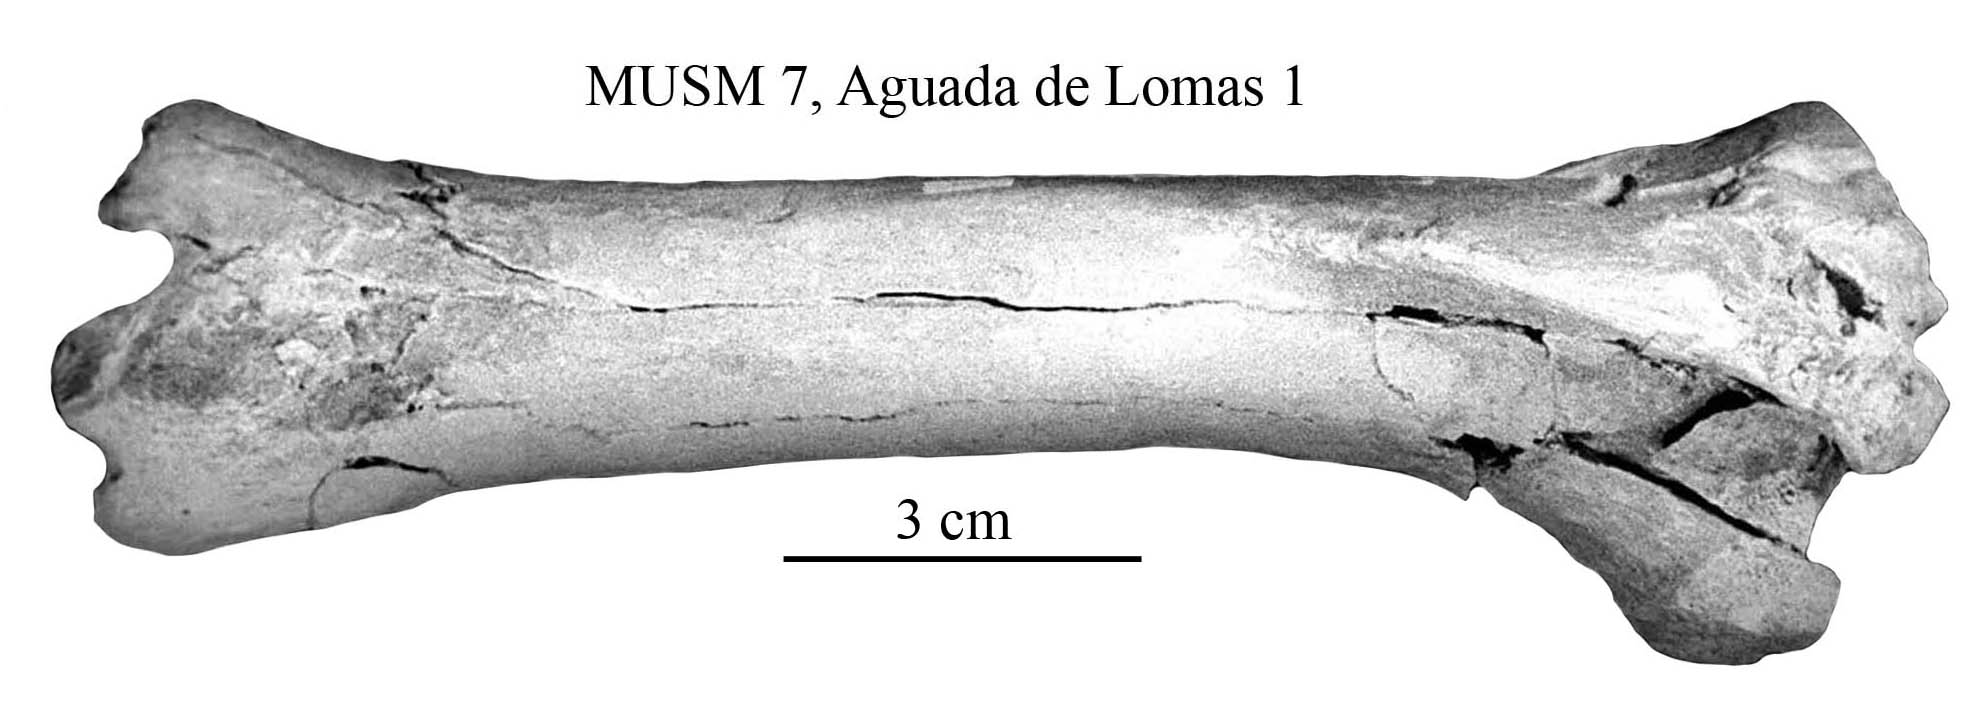 Möbelum sofa Inspirierend Equus Amerhipus Insulatus From Peru Musm 7 Cranium and